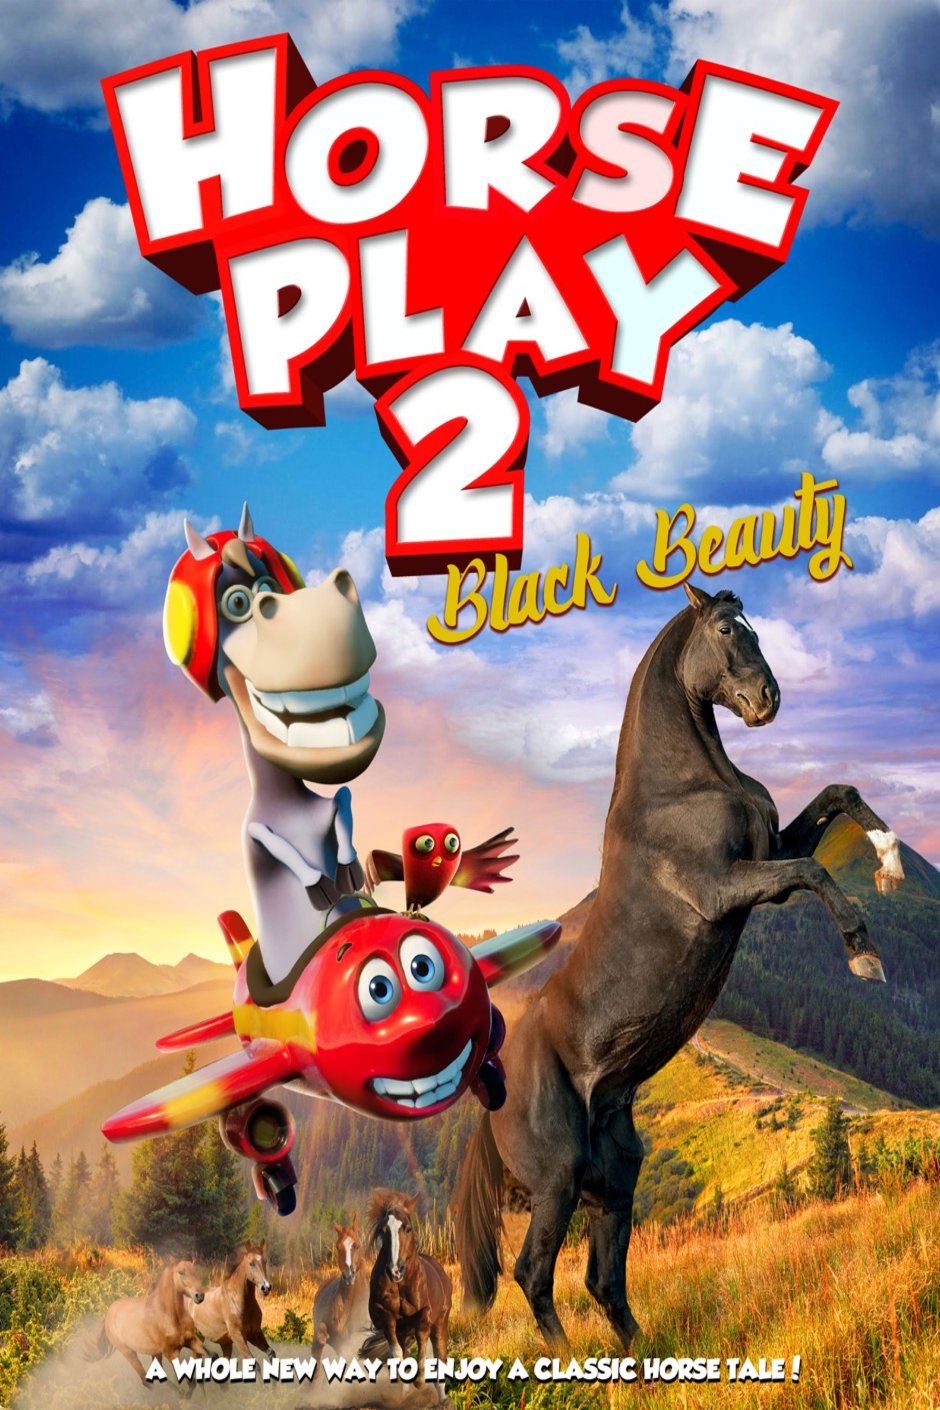 L'affiche du film Horse Play 2: Black Beauty